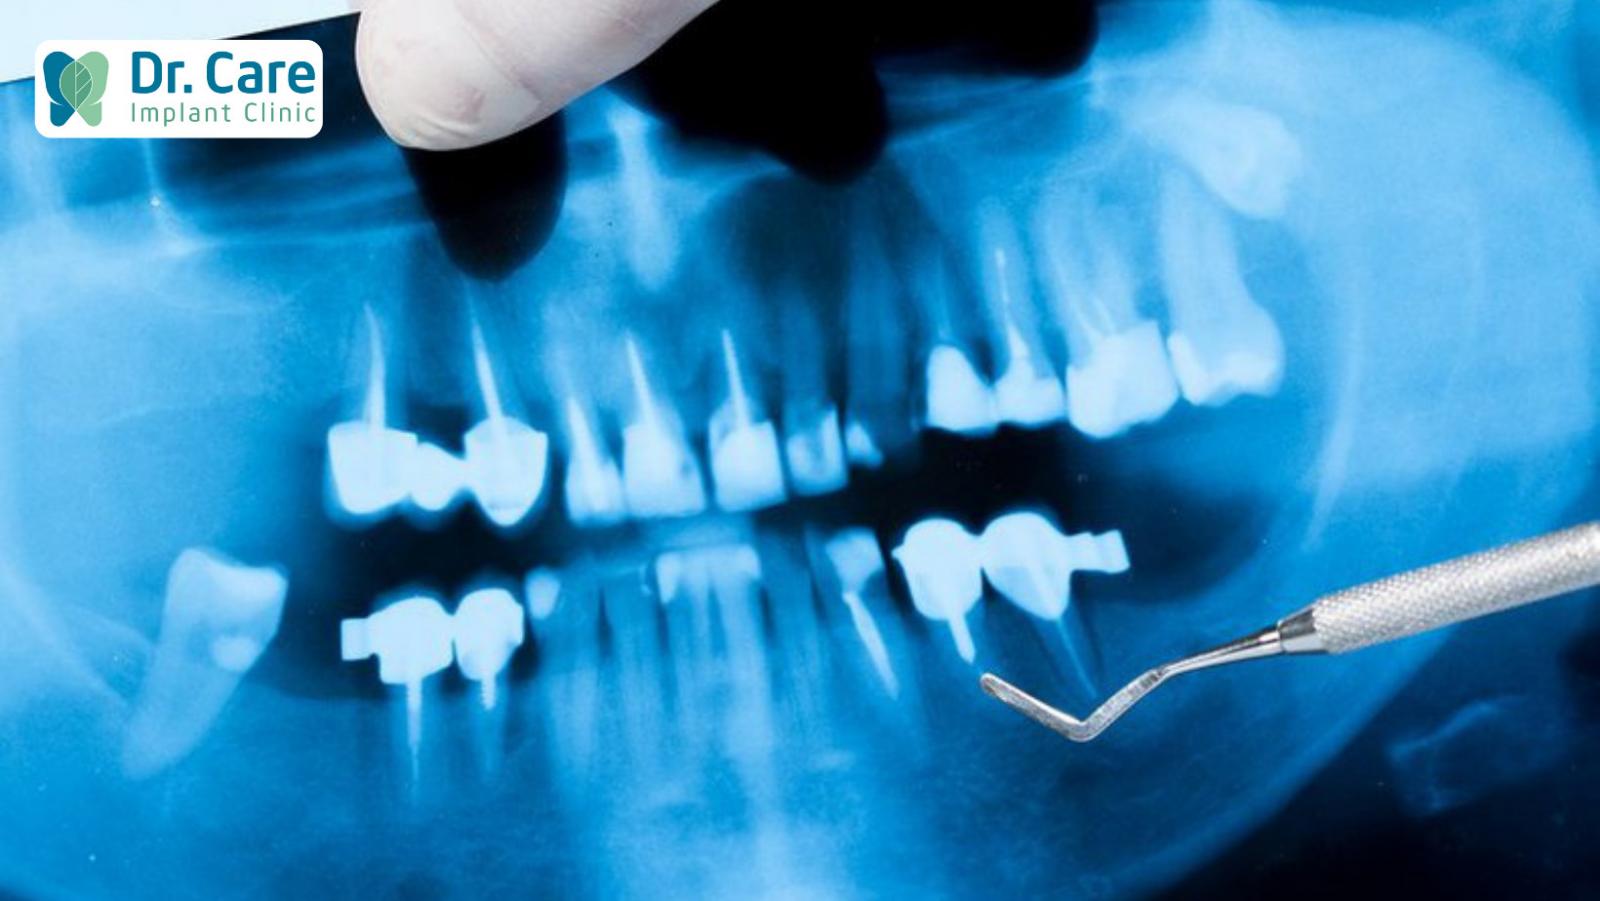 Phương pháp lấy tủy răng được thực hiện như thế nào?